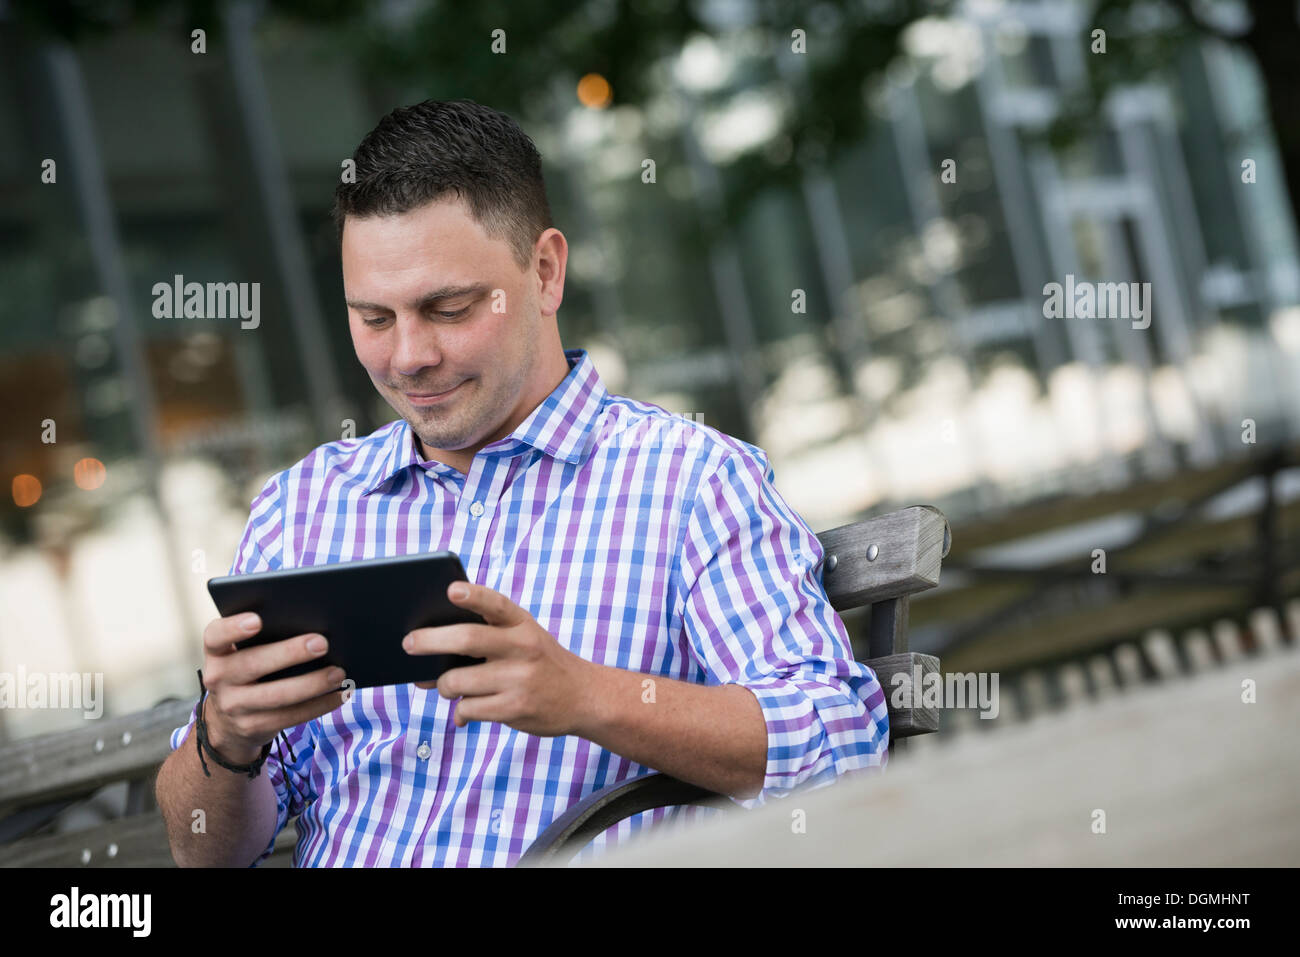 Estate in città. Un uomo seduto su una panchina utilizzando una tavoletta digitale. Foto Stock